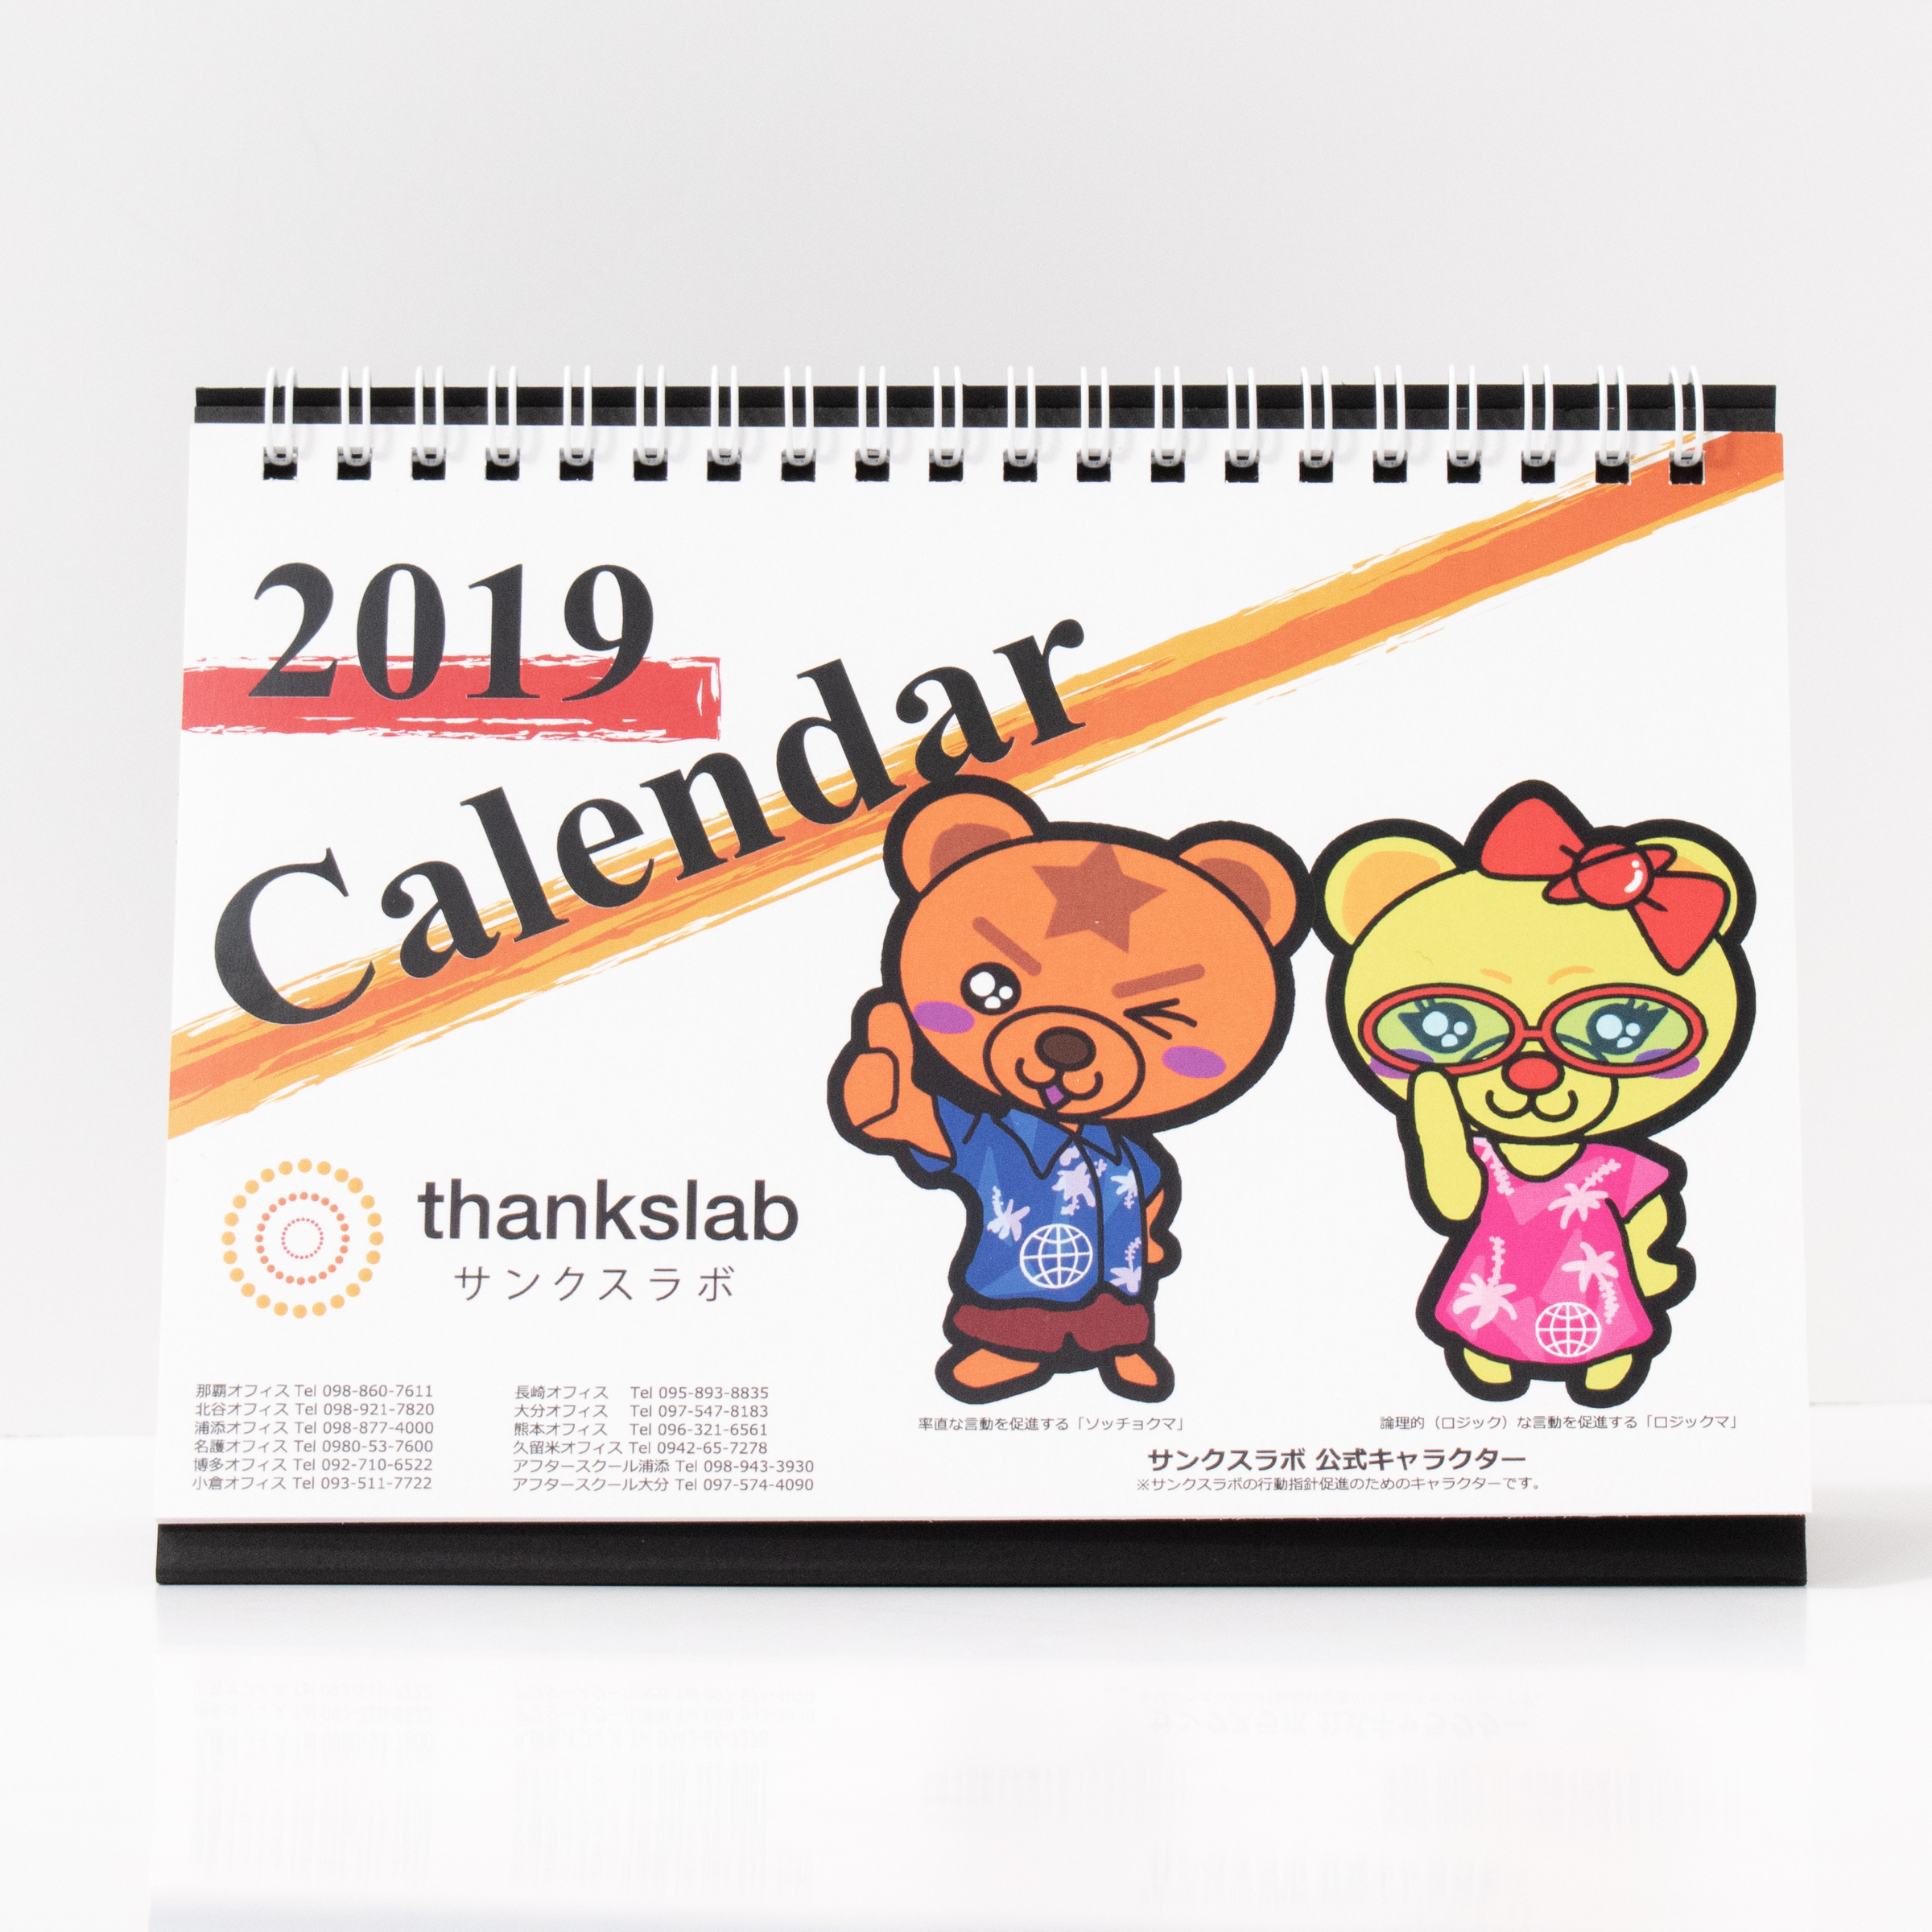 「サンクスラボ株式会社 様」製作のオリジナルカレンダー